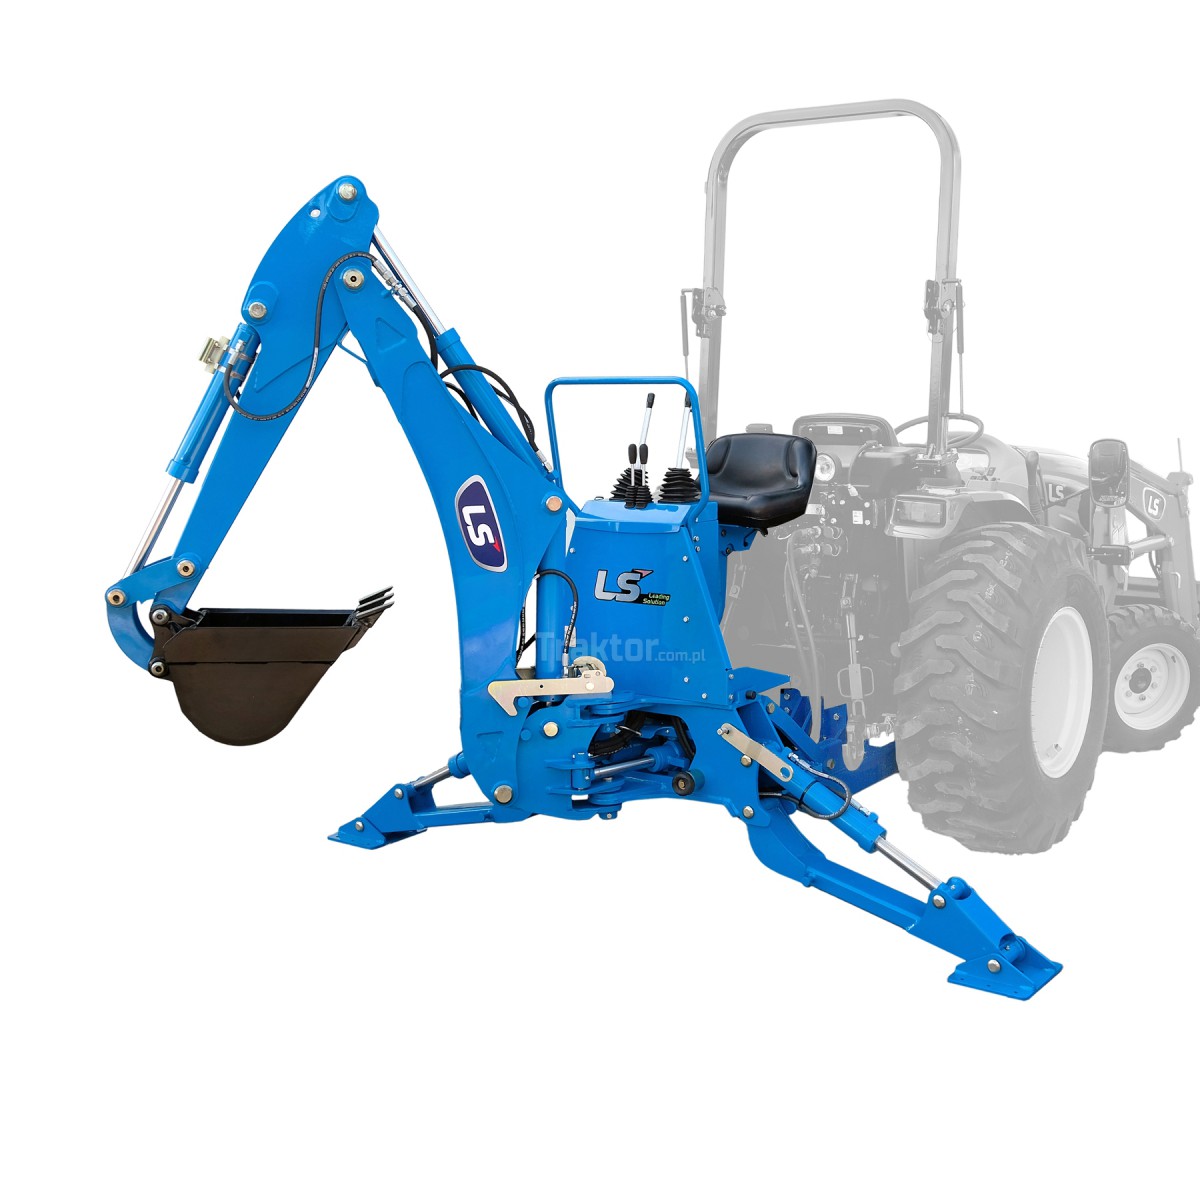 Tractor excavador LB2100 para el tractor LS Tractor MT3